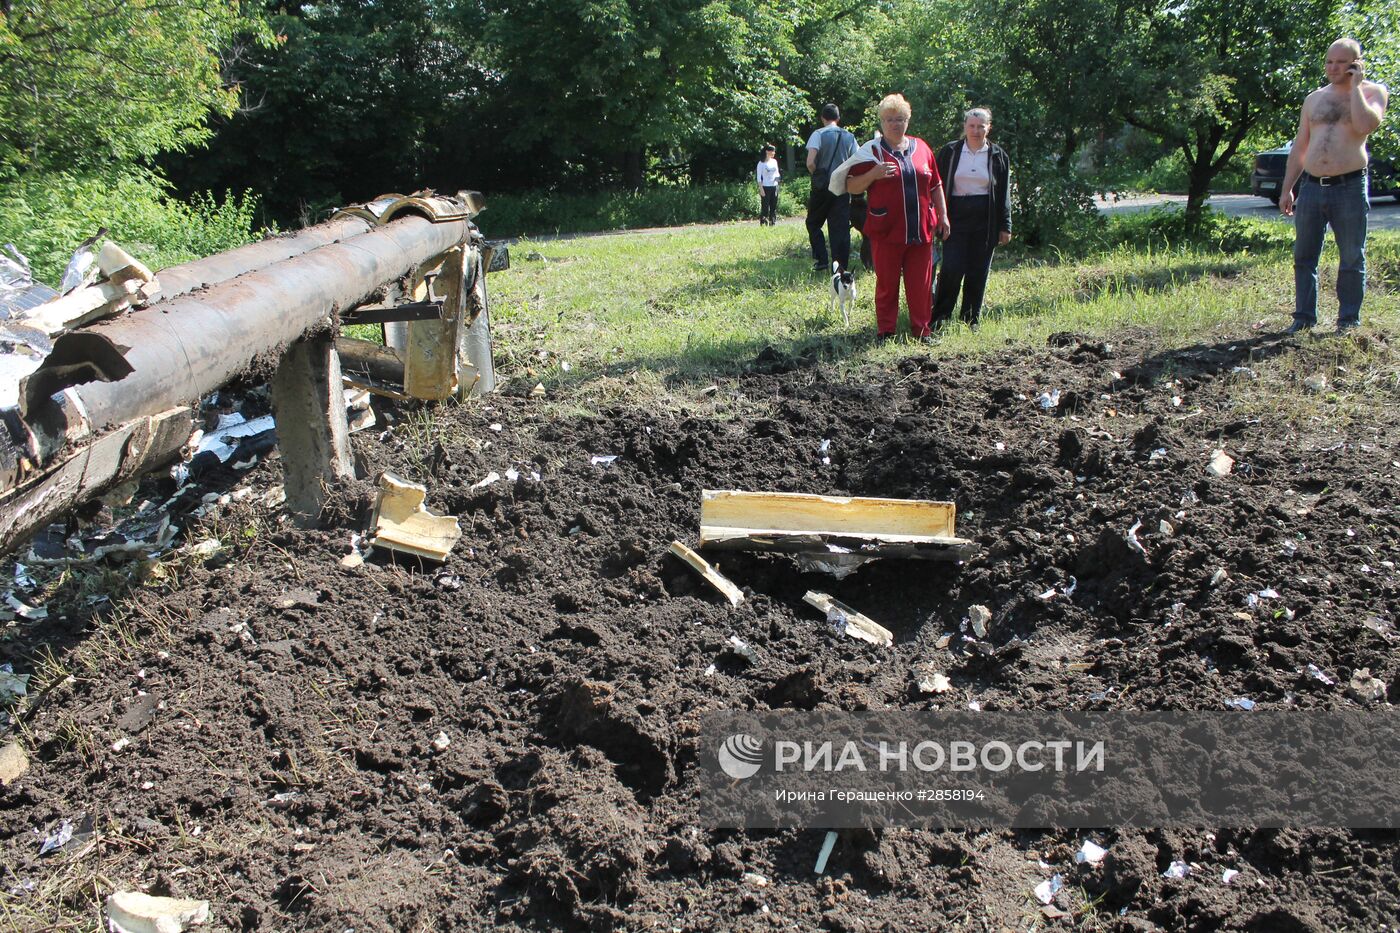 Последствия обстрела жилого дома в Донецке